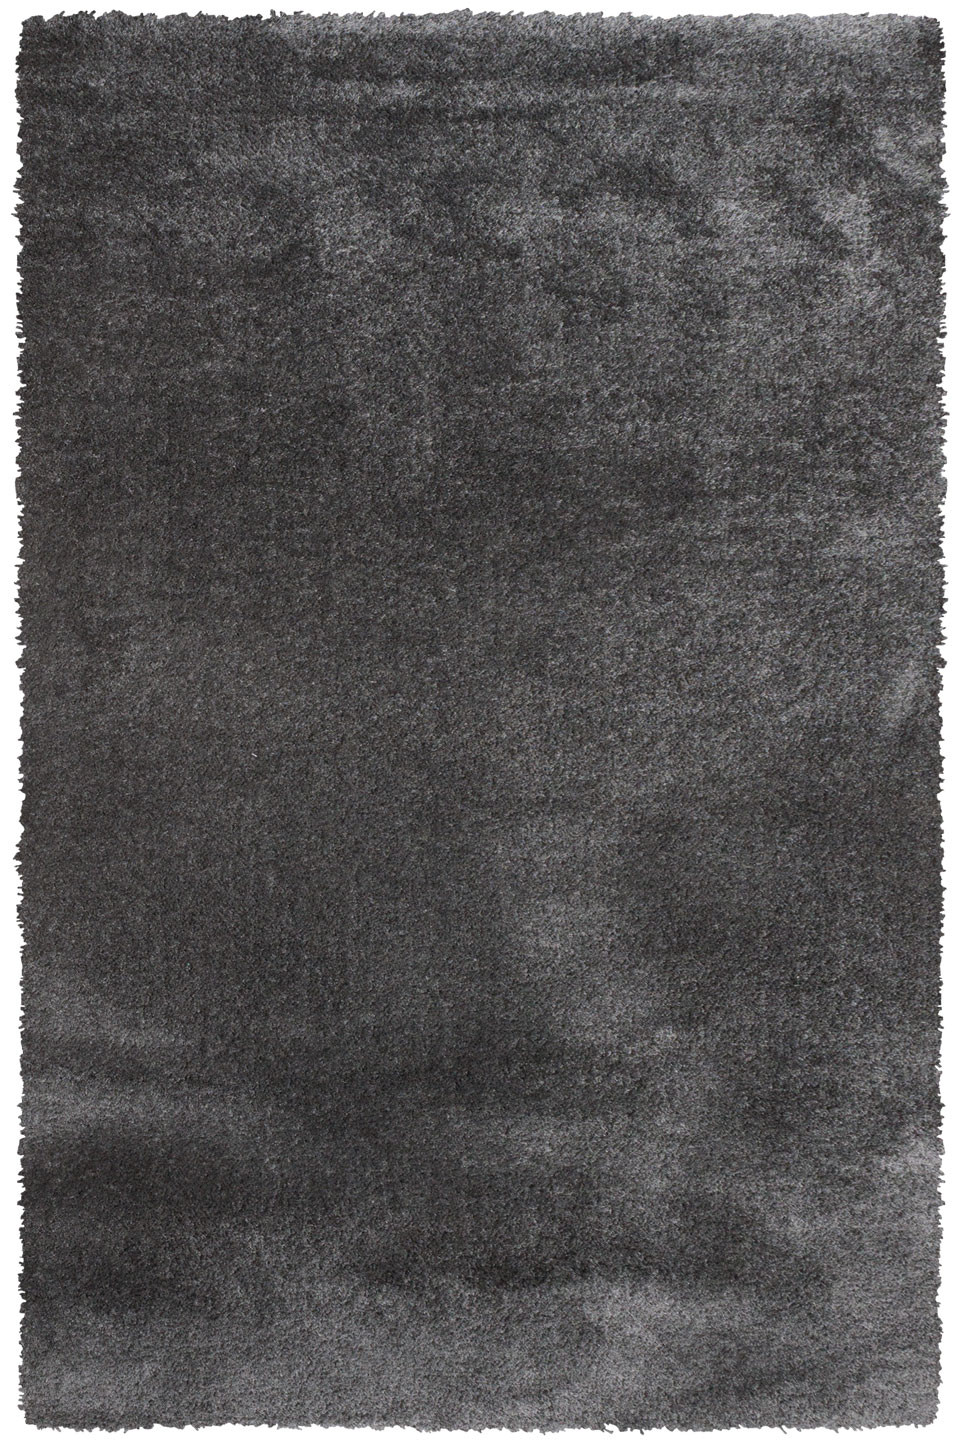 Kusový koberec Dolce Vita 01 / GGG - 80x150 cm Sintelon koberce 